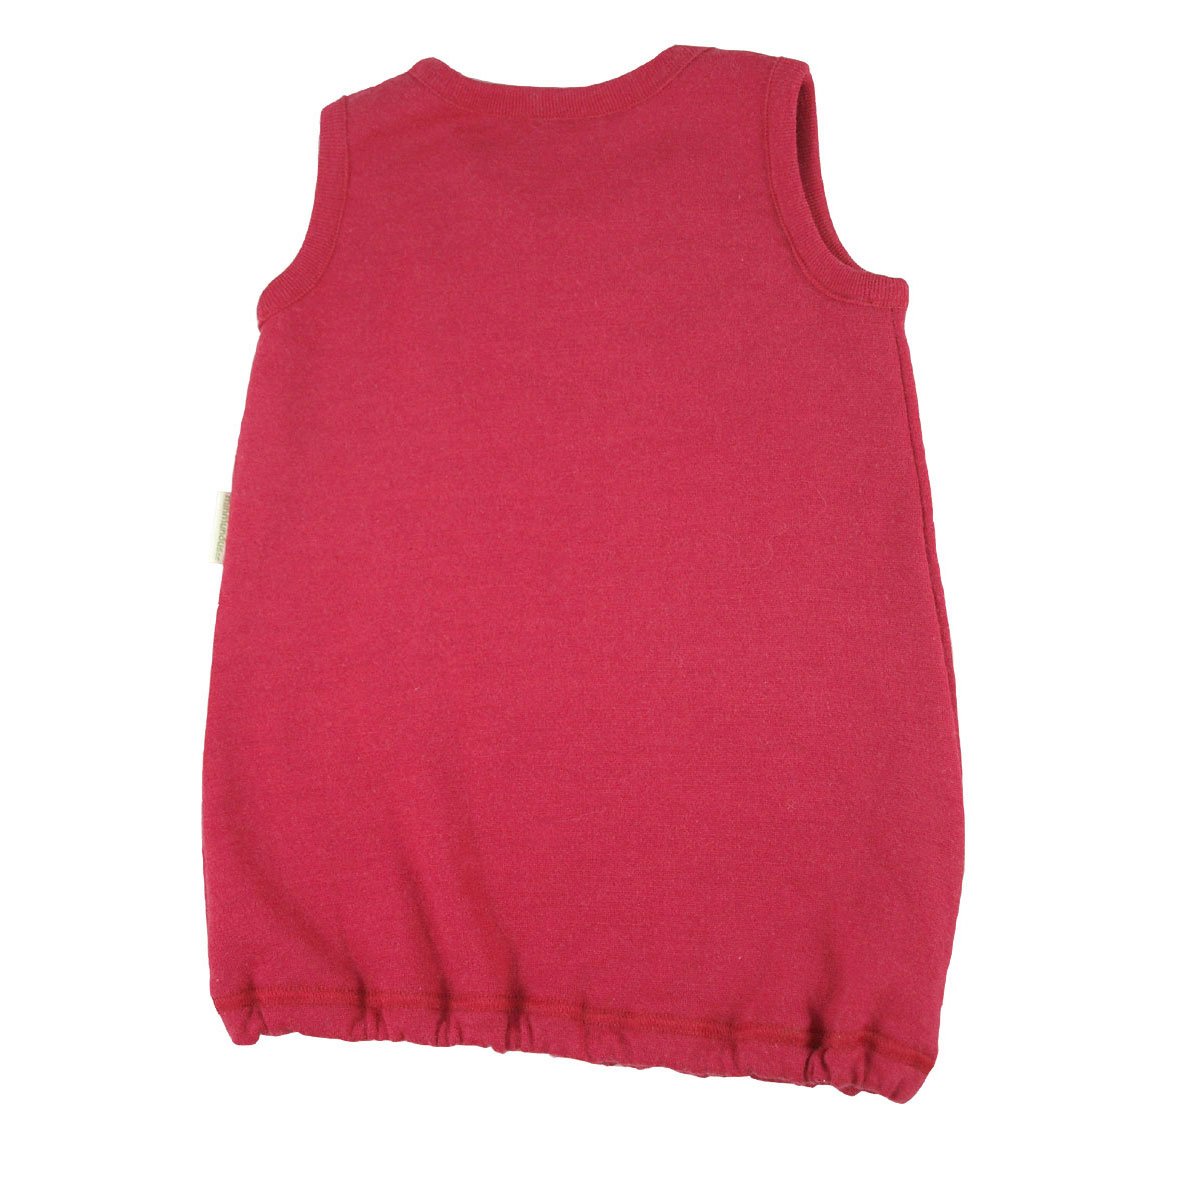 Minimundus tunika klänning av ullfrotté 100% merinoull röd